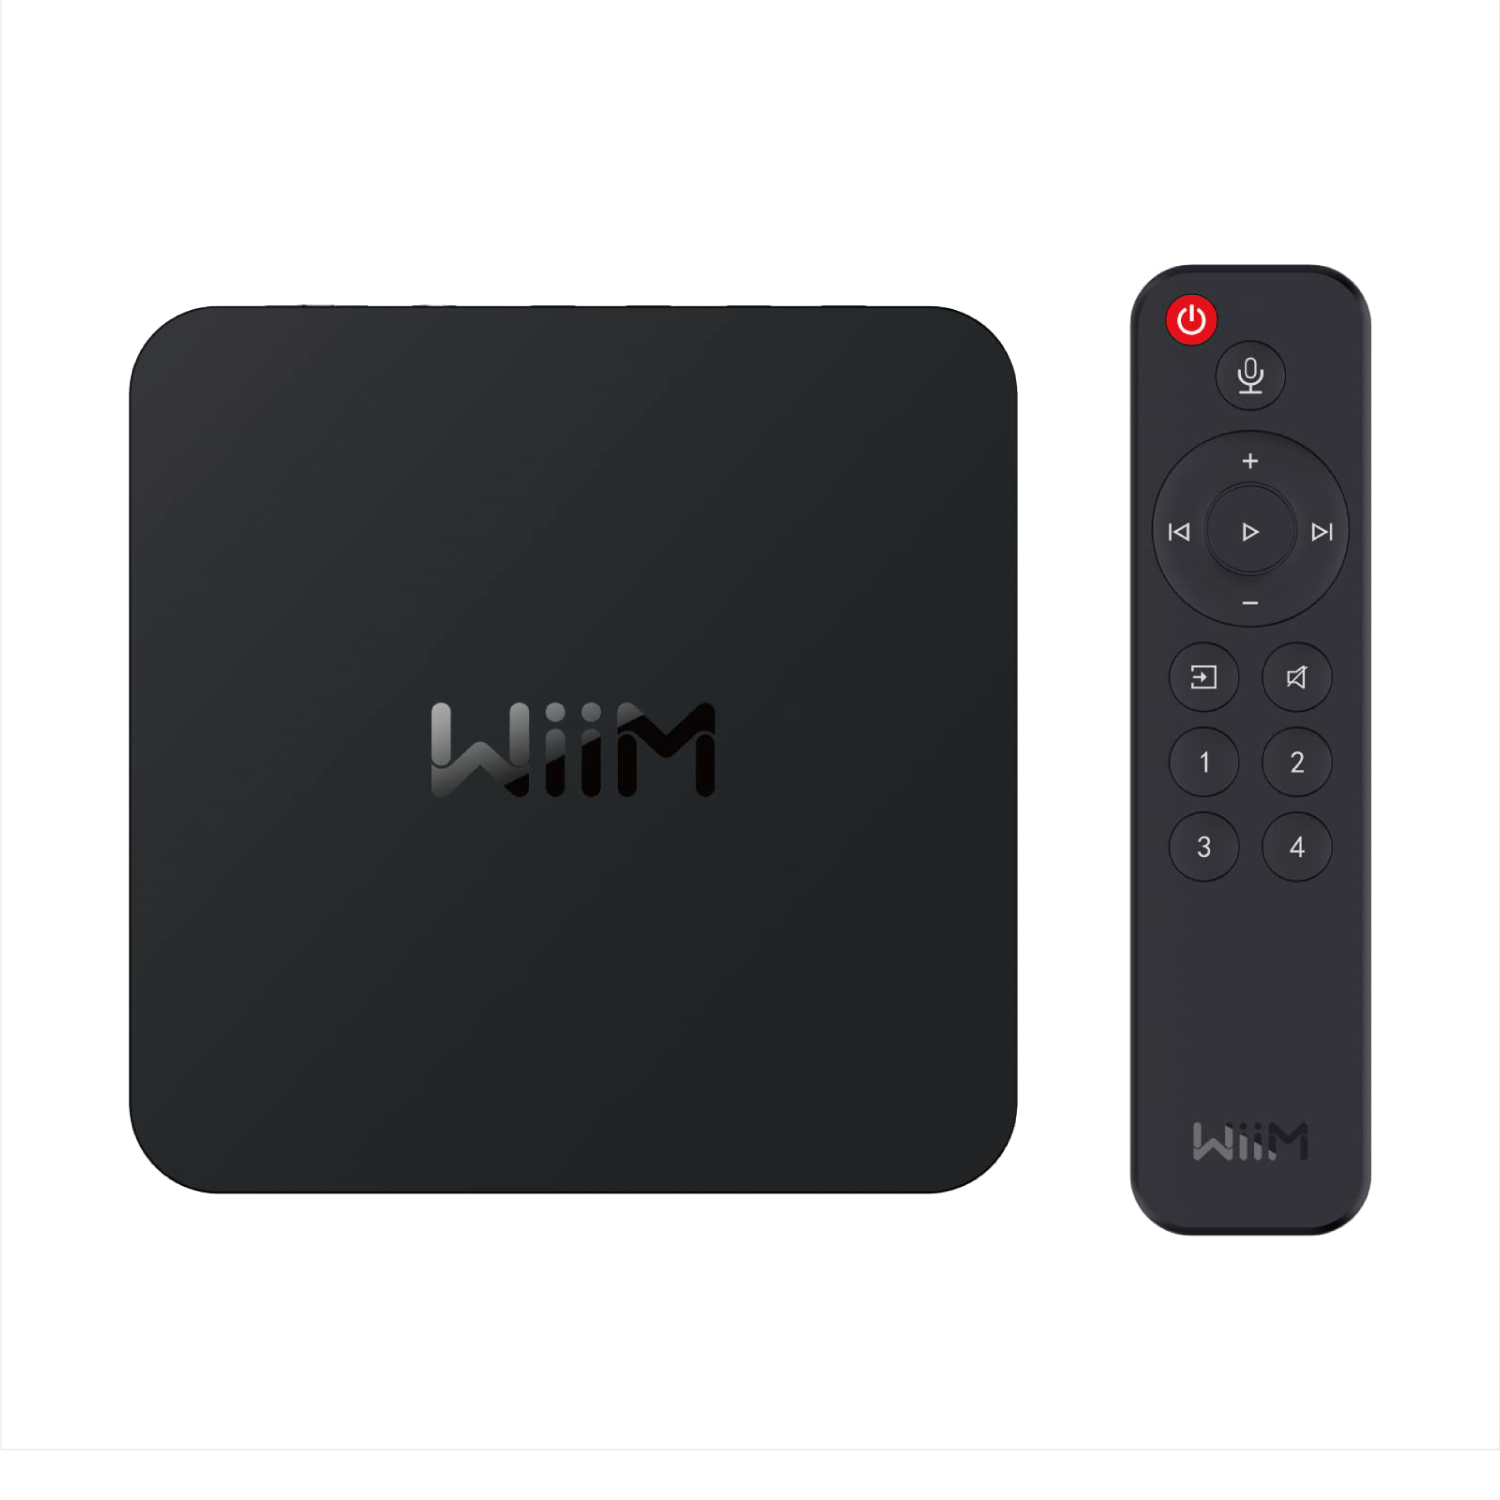 WiiM Pro Plus Streamer - Origin Acoustics